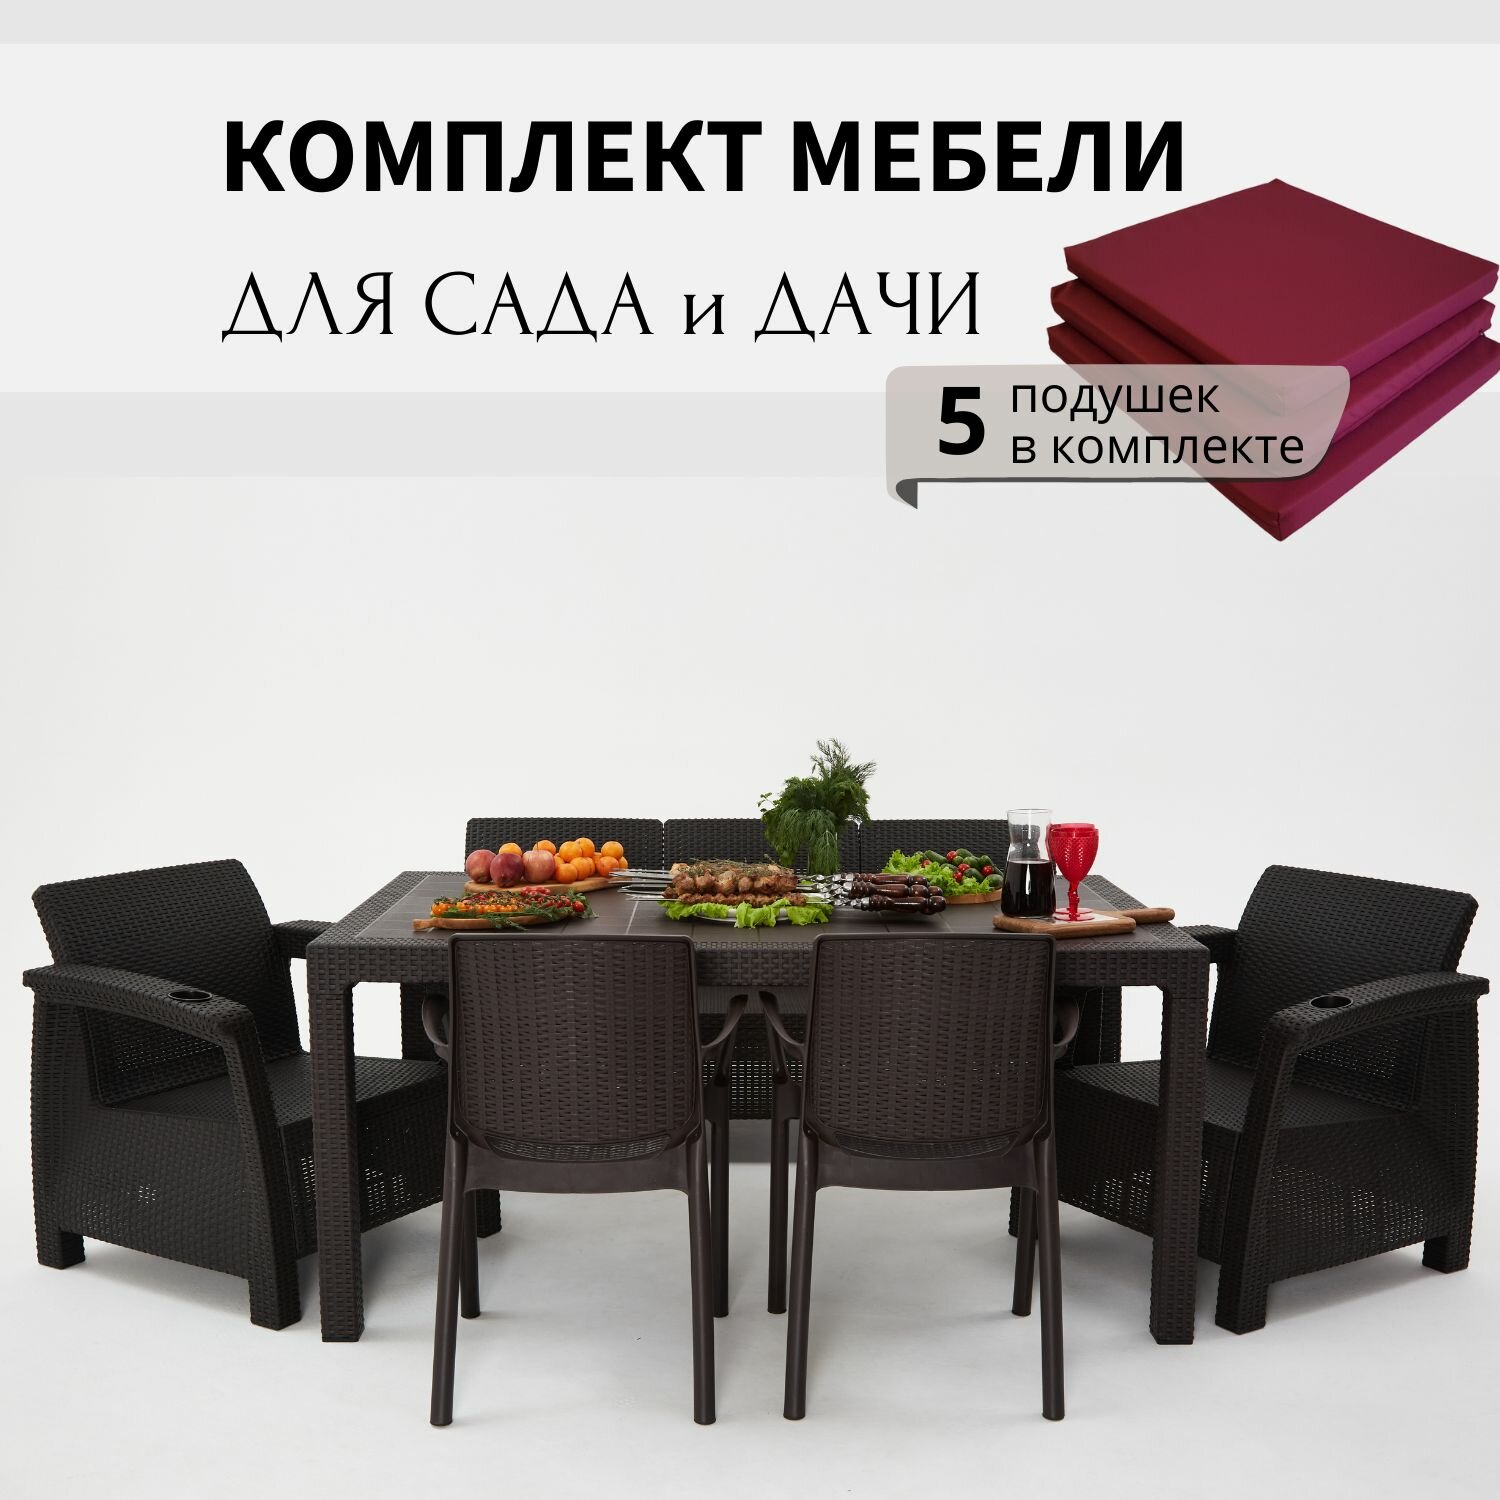 Комплект садовой мебели из ротанга HomlyGreen 3+1+1+2стула+обеденный стол 160х95, с комплектом бордовых подушек